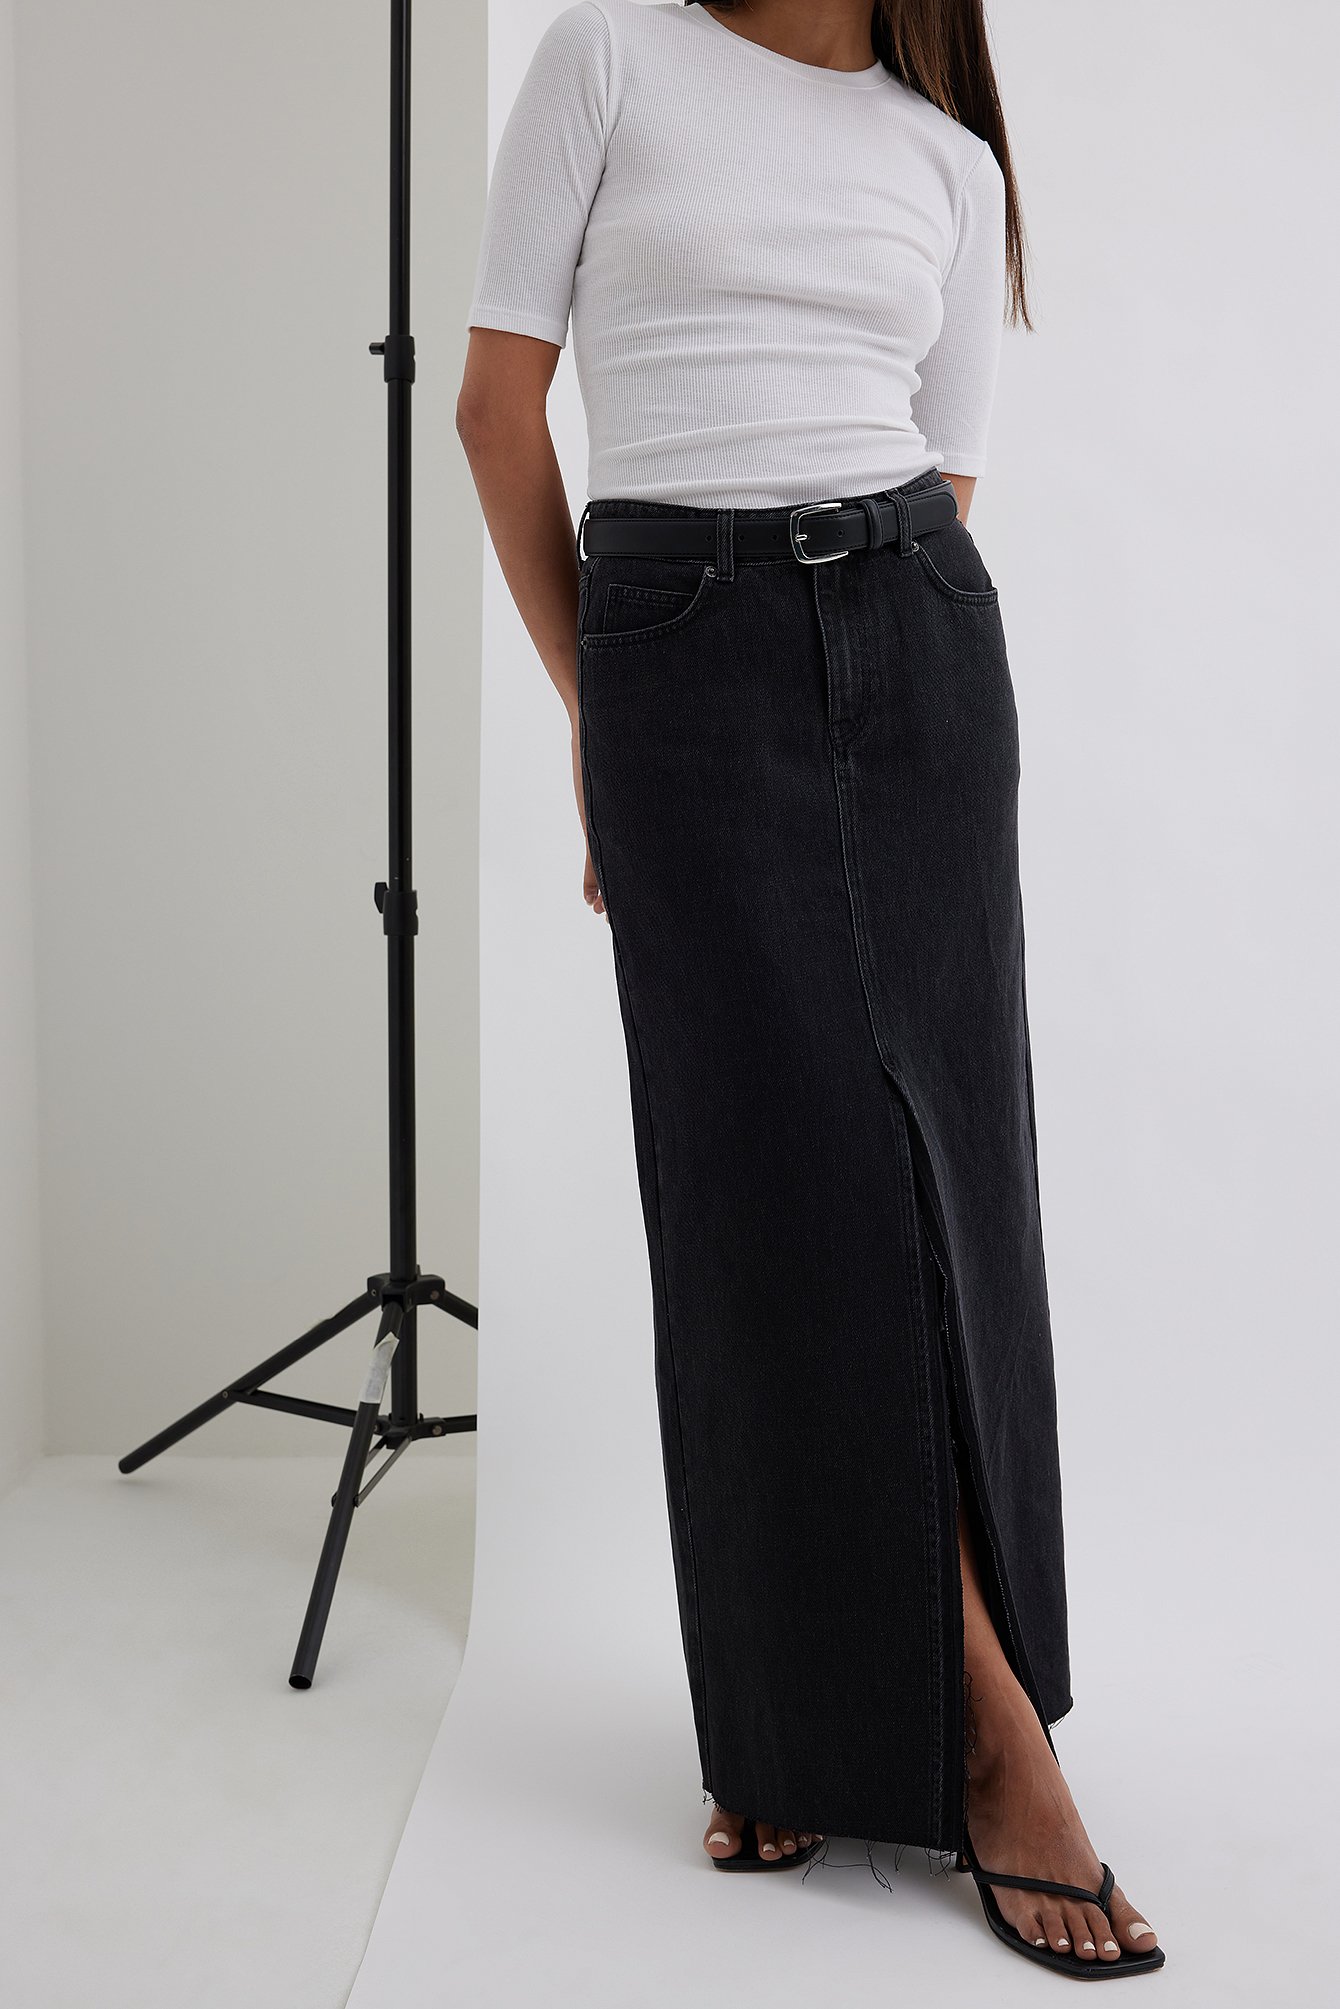 Karnel - Denim Midi Skirt | YesStyle | Denim skirt women, Black denim skirt  outfit, Long denim skirt outfit